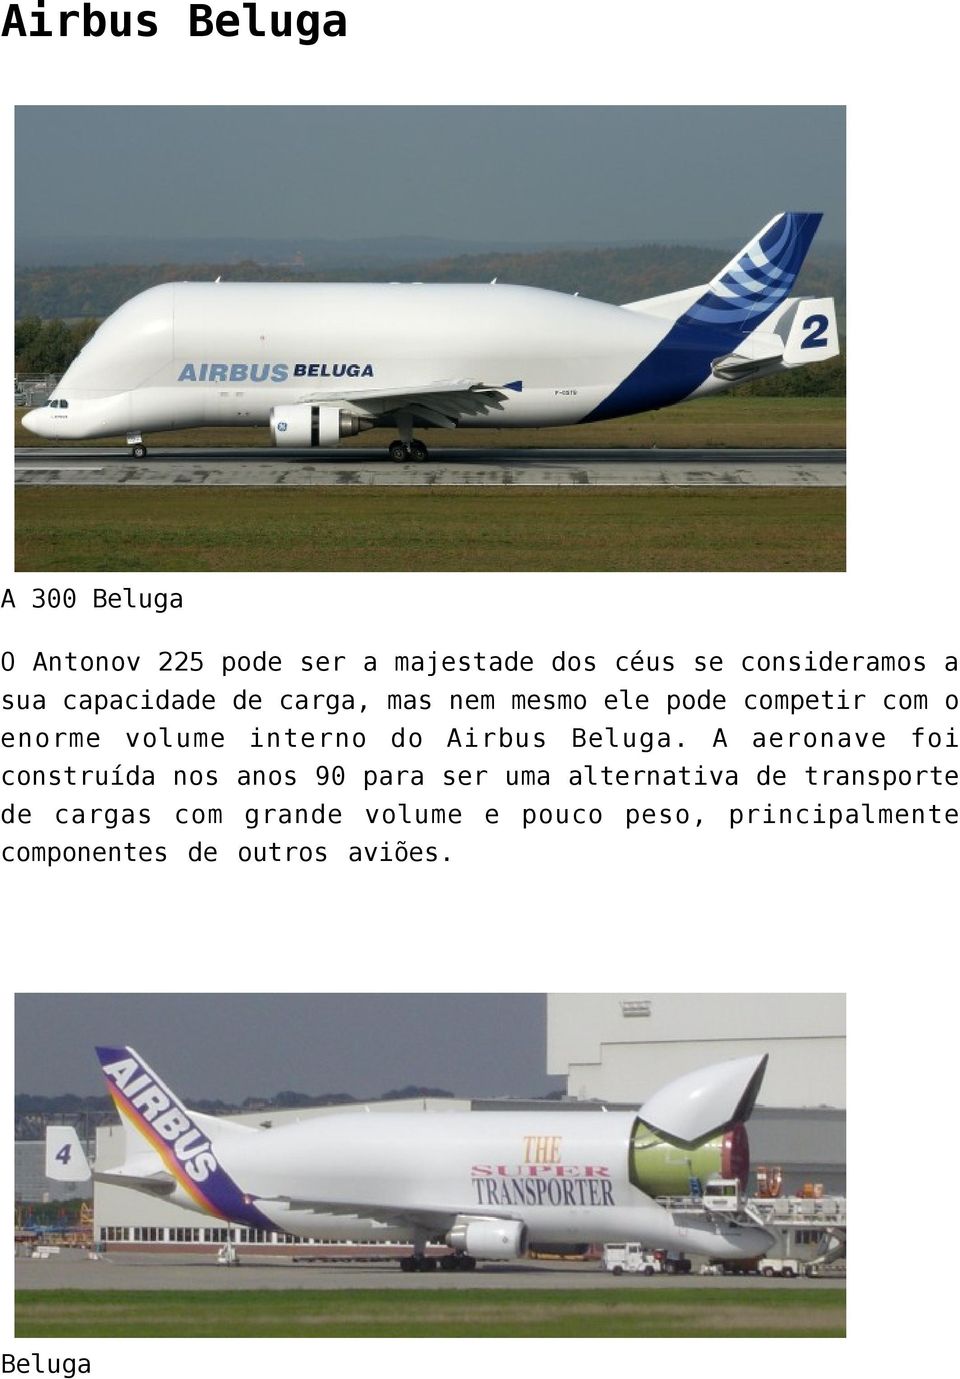 Airbus Beluga.